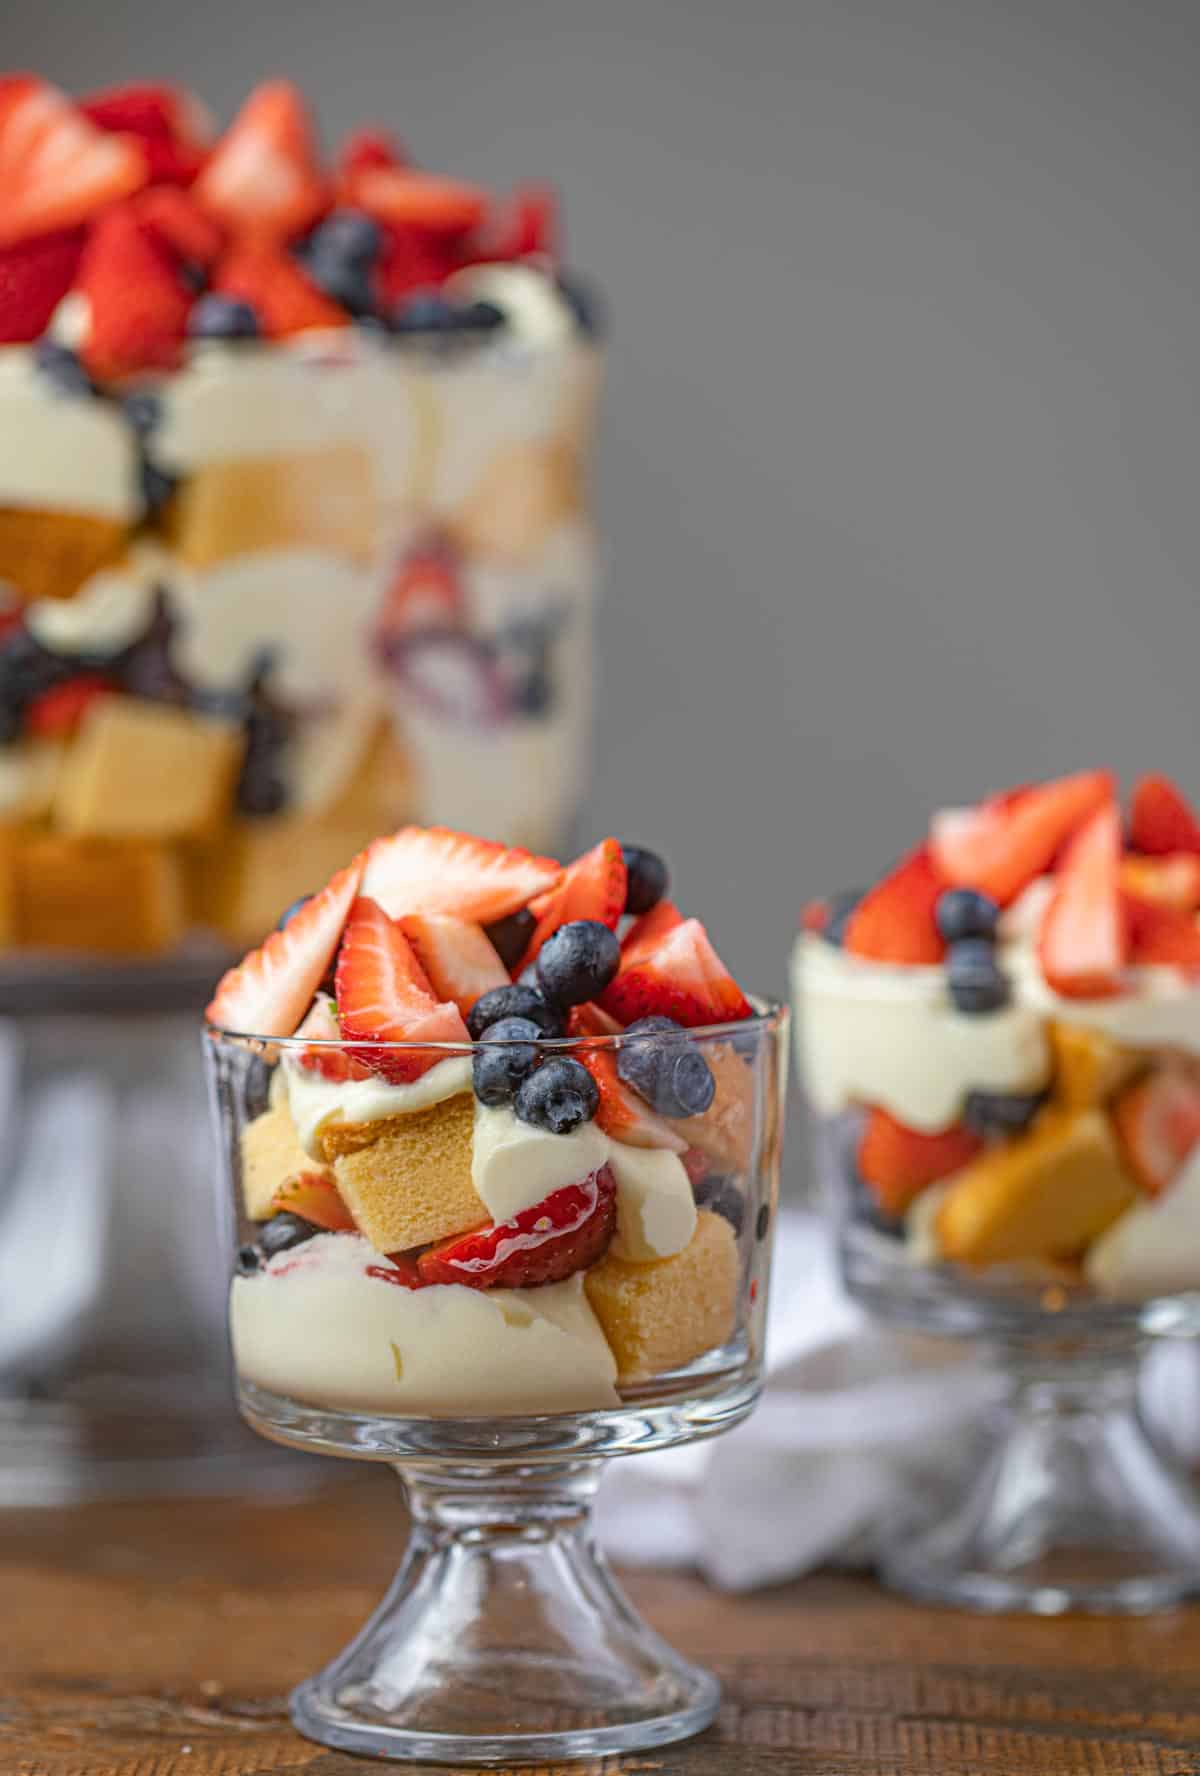 Mixed Berry Trifle Better Than Rachel Green S Dinner Then Dessert